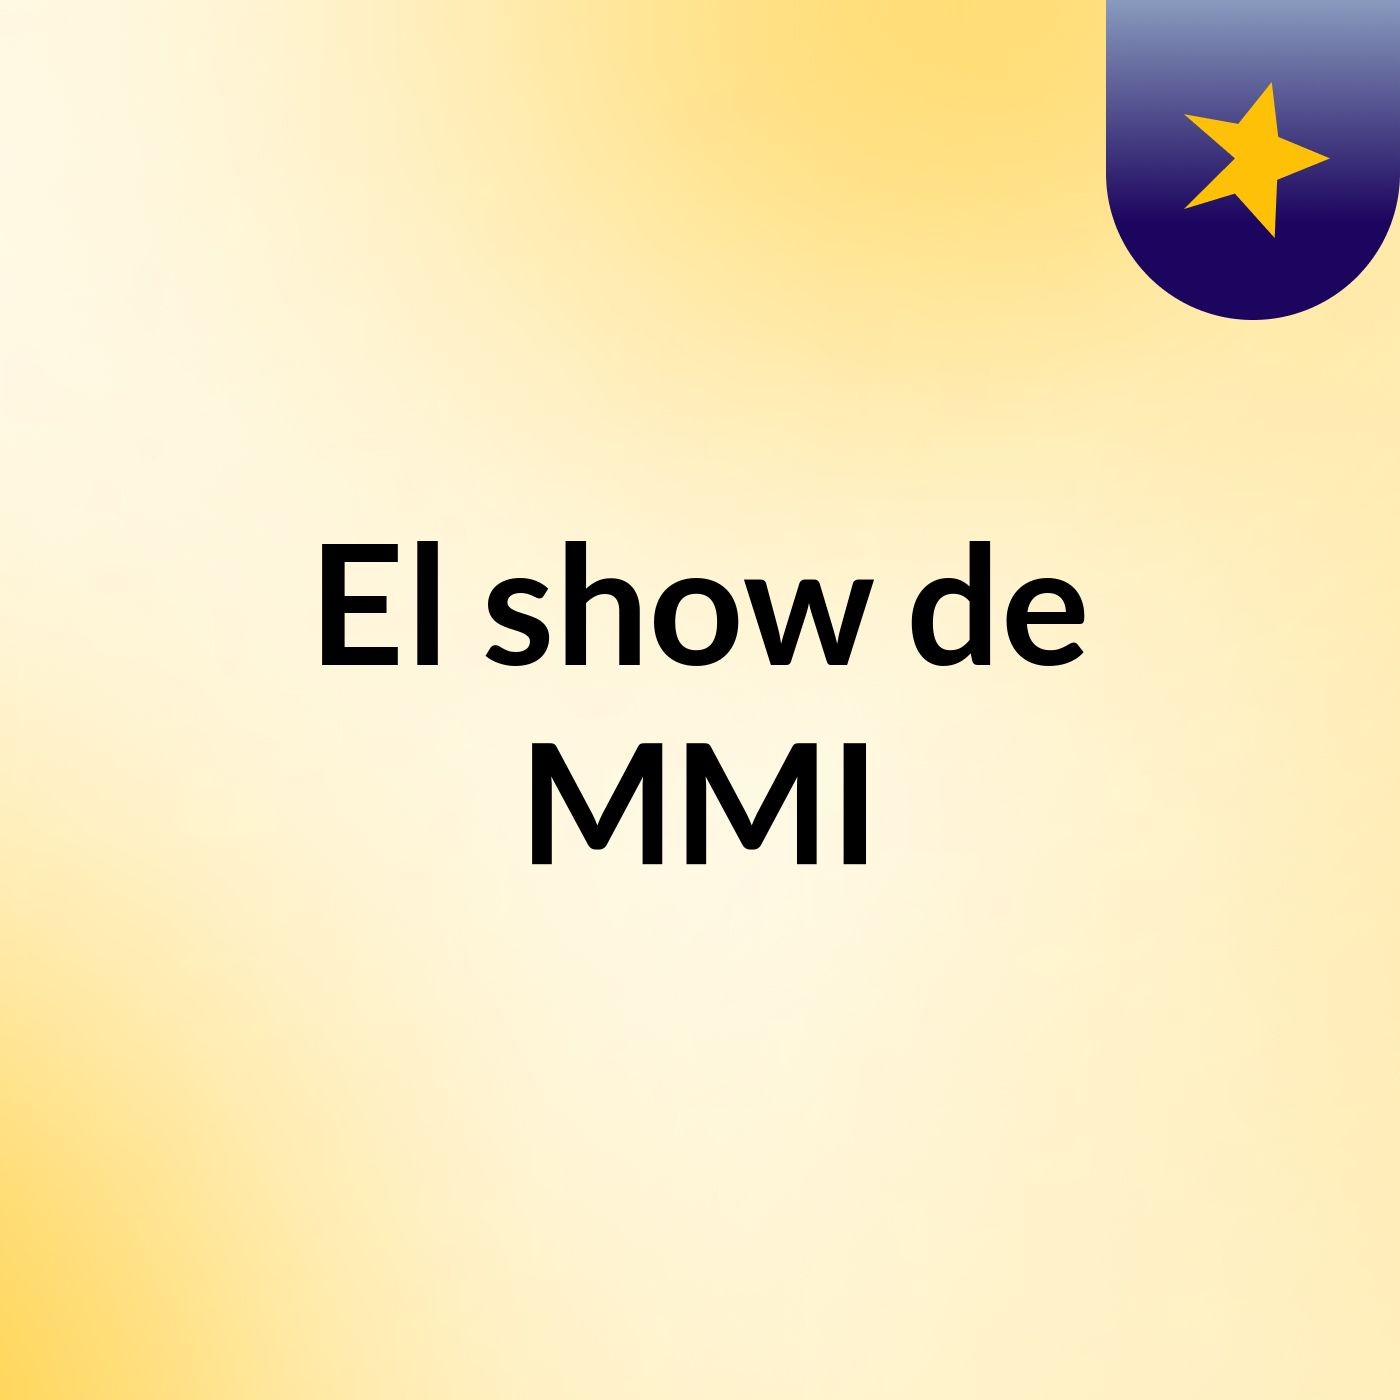 El show de MMI